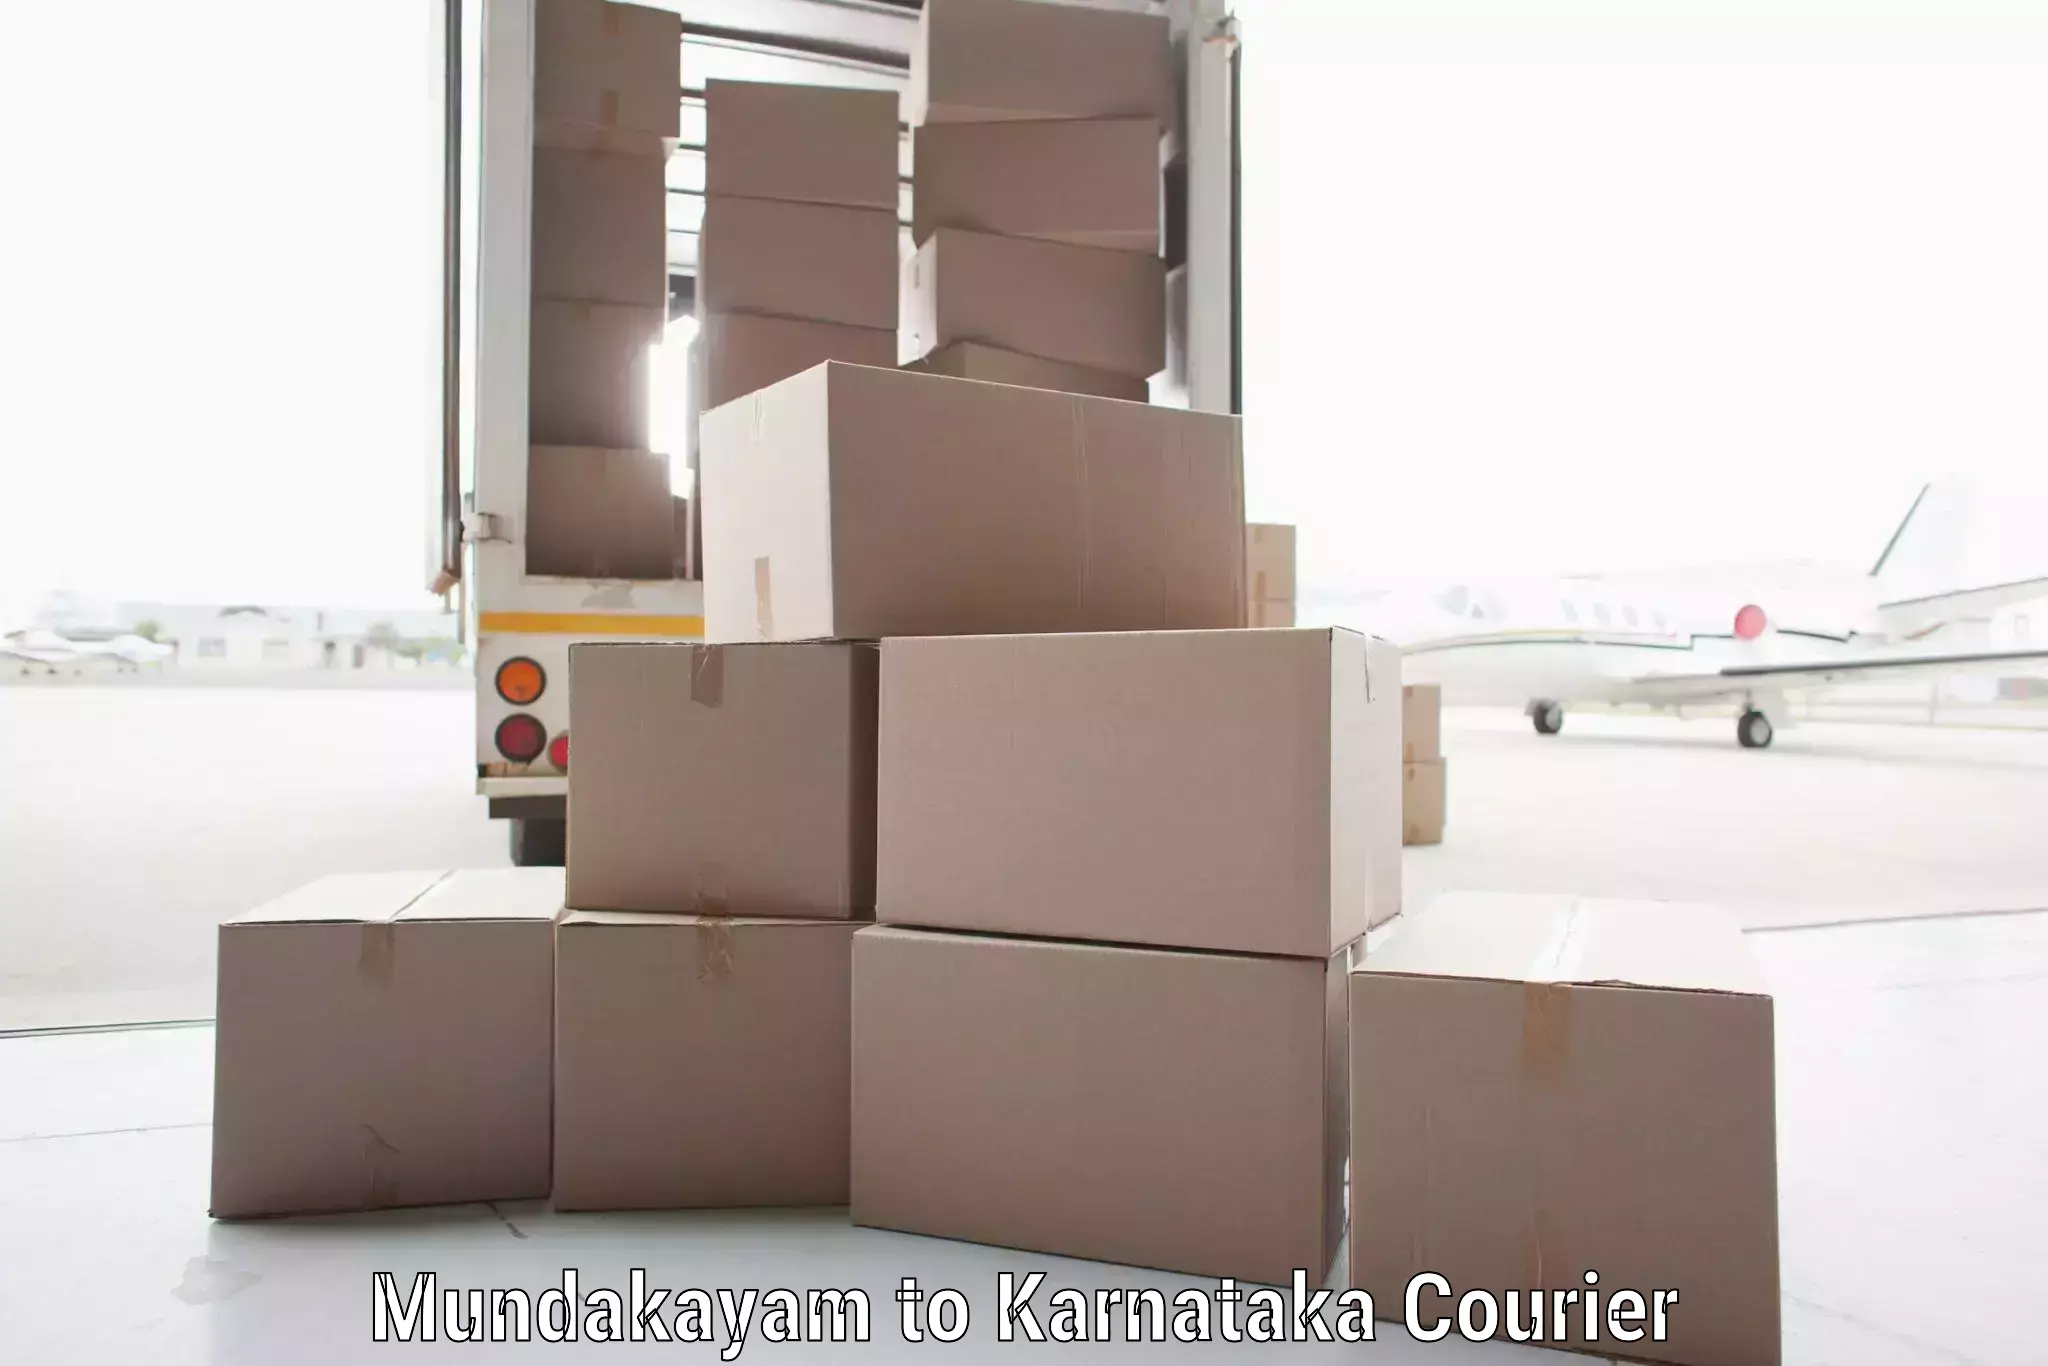 High-capacity shipping options in Mundakayam to Hanur